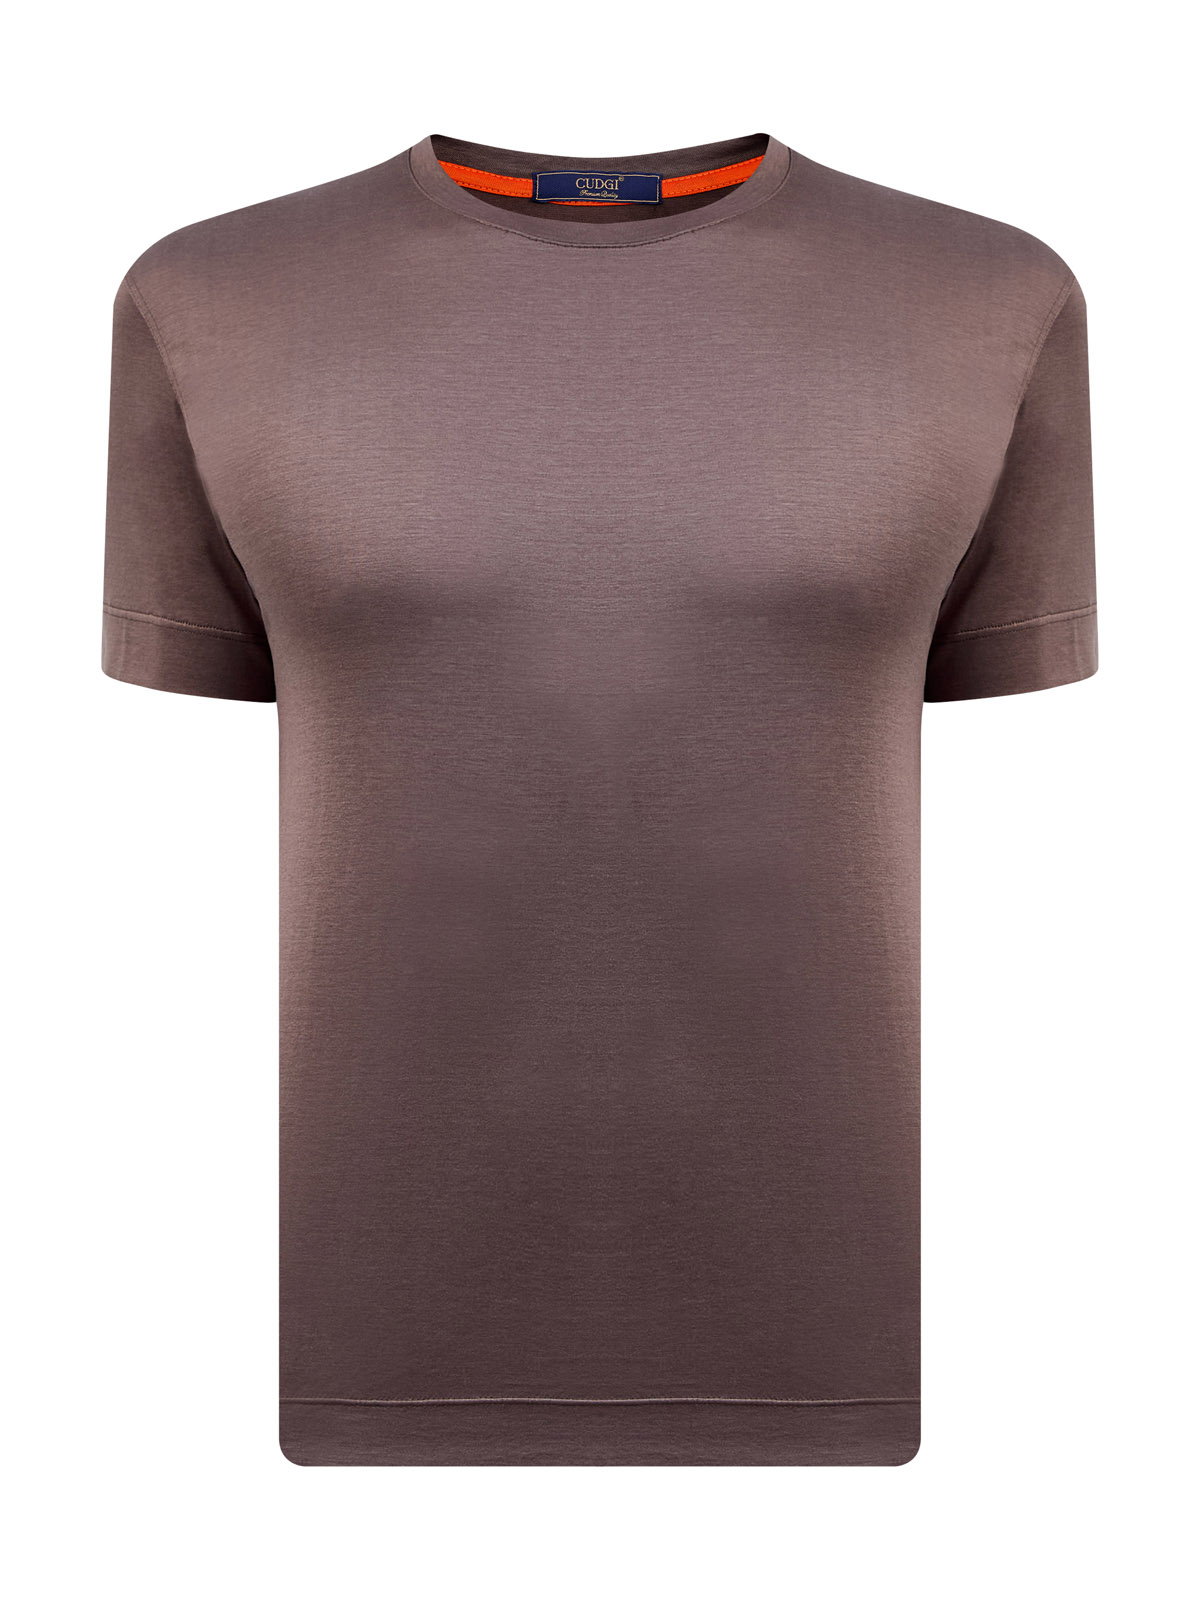 Однотонная футболка из хлопкового и шелкового джерси CUDGI, цвет коричневый, размер 48;50;52;56;60;54